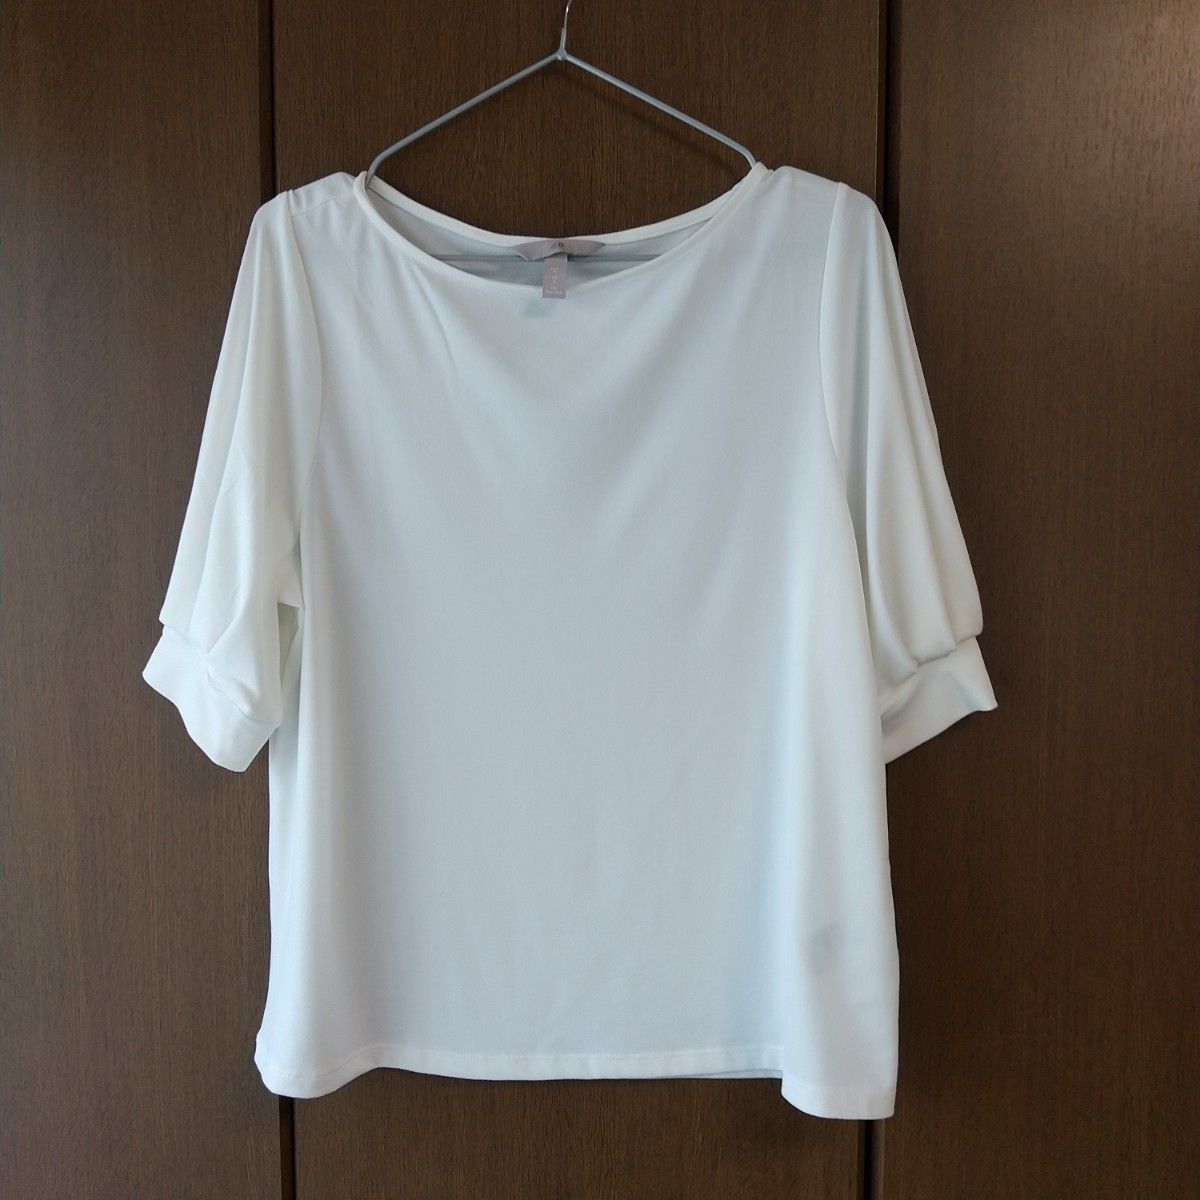 【同梱200円引き】 H&M カットソー ソフトパフスリーブ ホワイト シンプル 五分袖 白 インナー 落ち感 涼感 Tシャツ